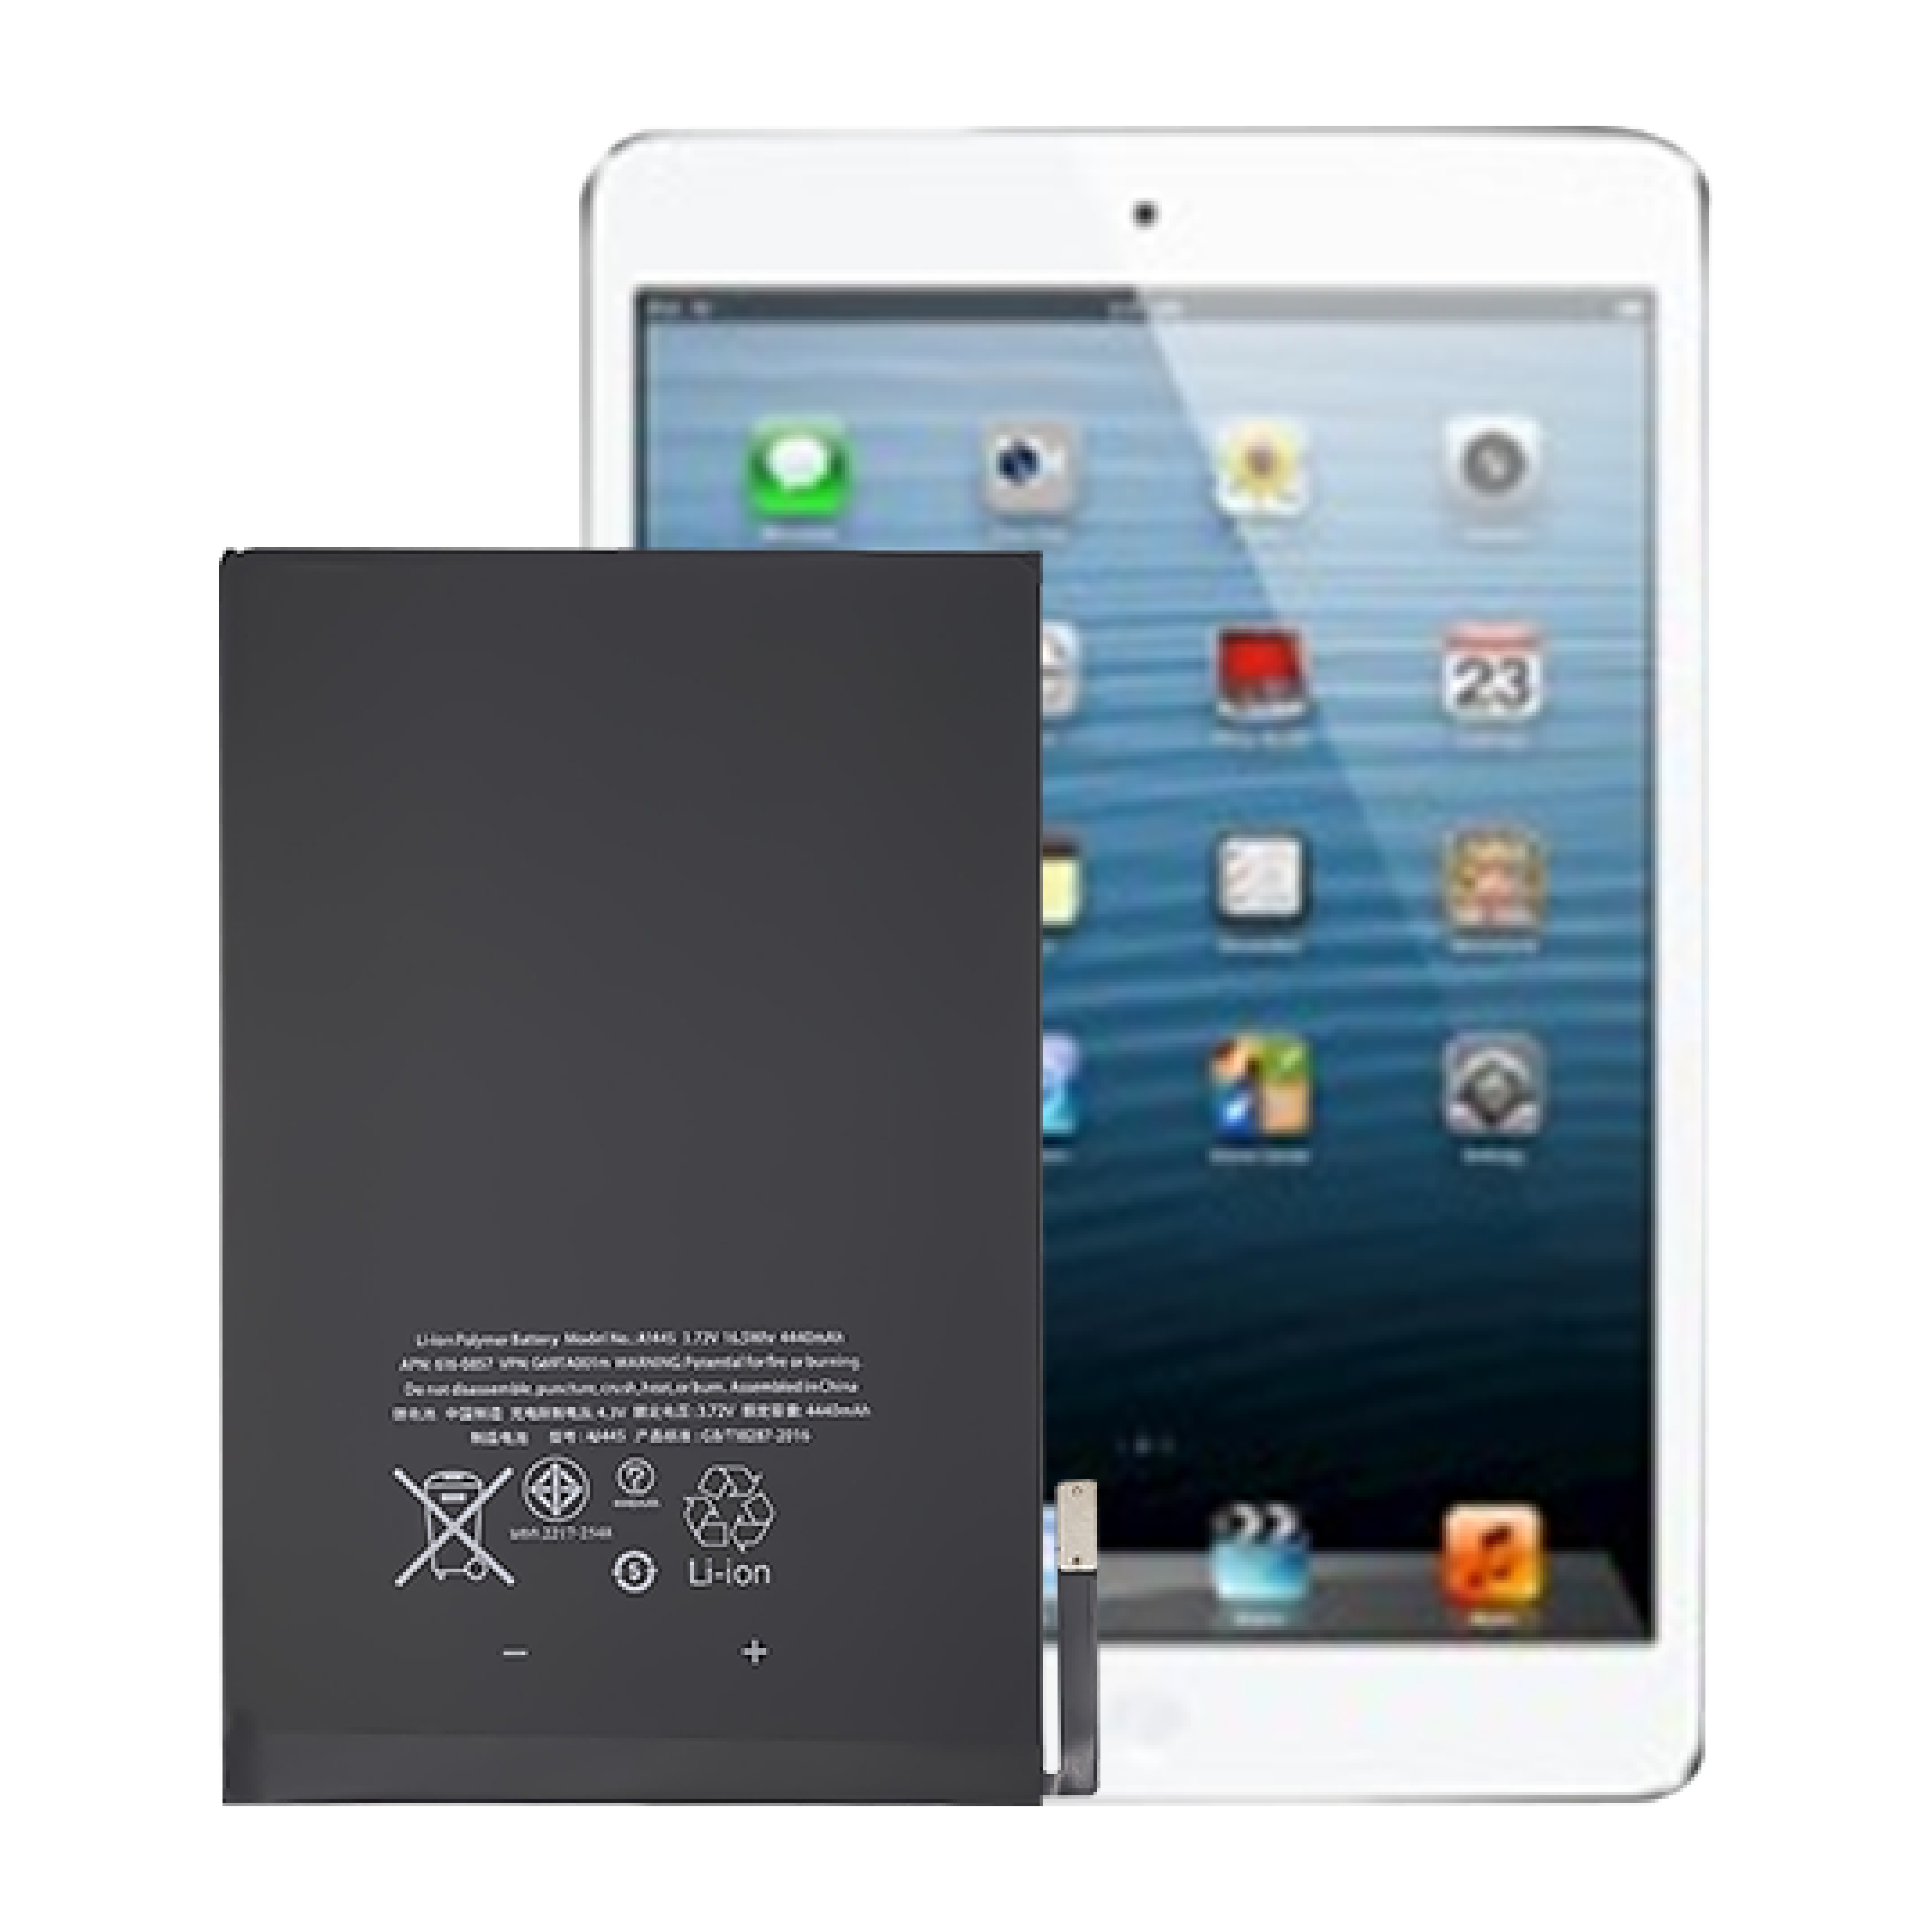 Wysokiej jakości fabrycznie nowa, wewnętrzna bateria tabletu o cyklu 0 do baterii Apple iPad mini1